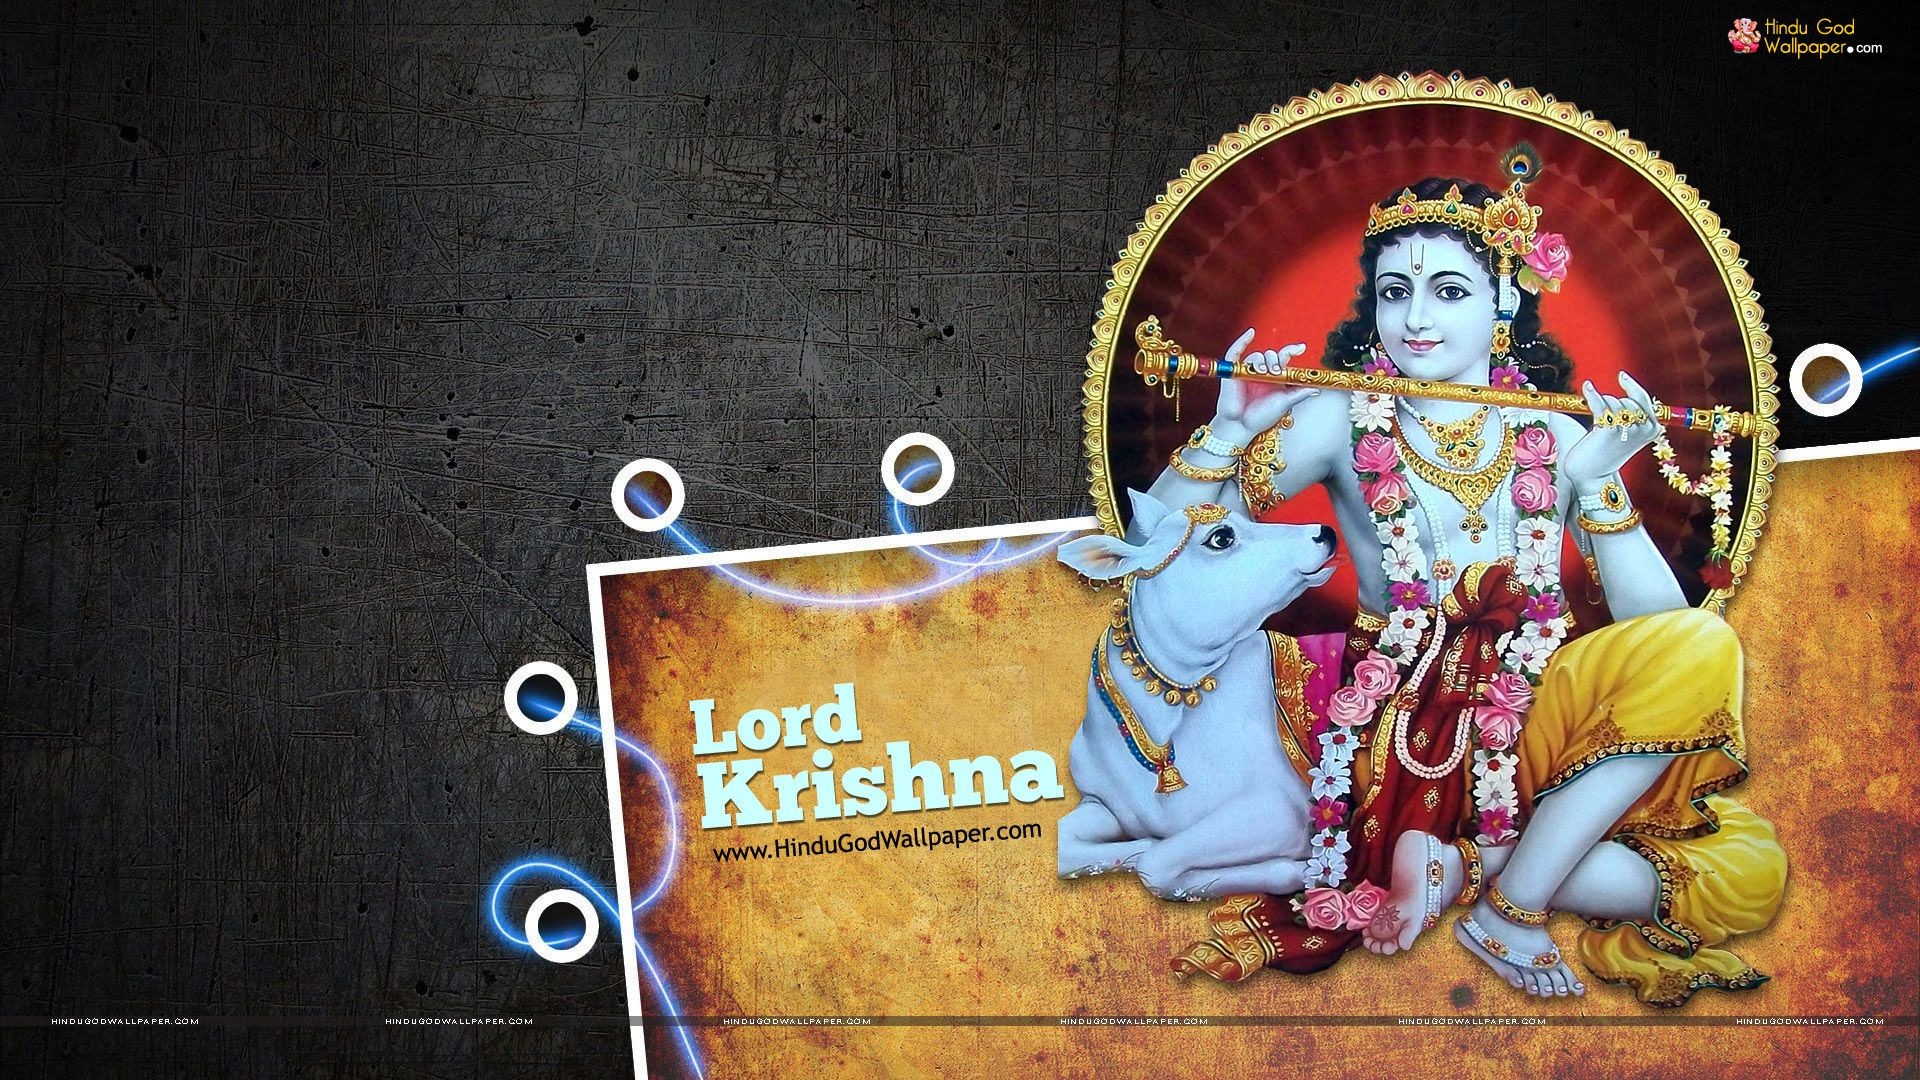 1920x1080 ... Lord Krishna Wallpaper 1080p Hd Full Size Download.